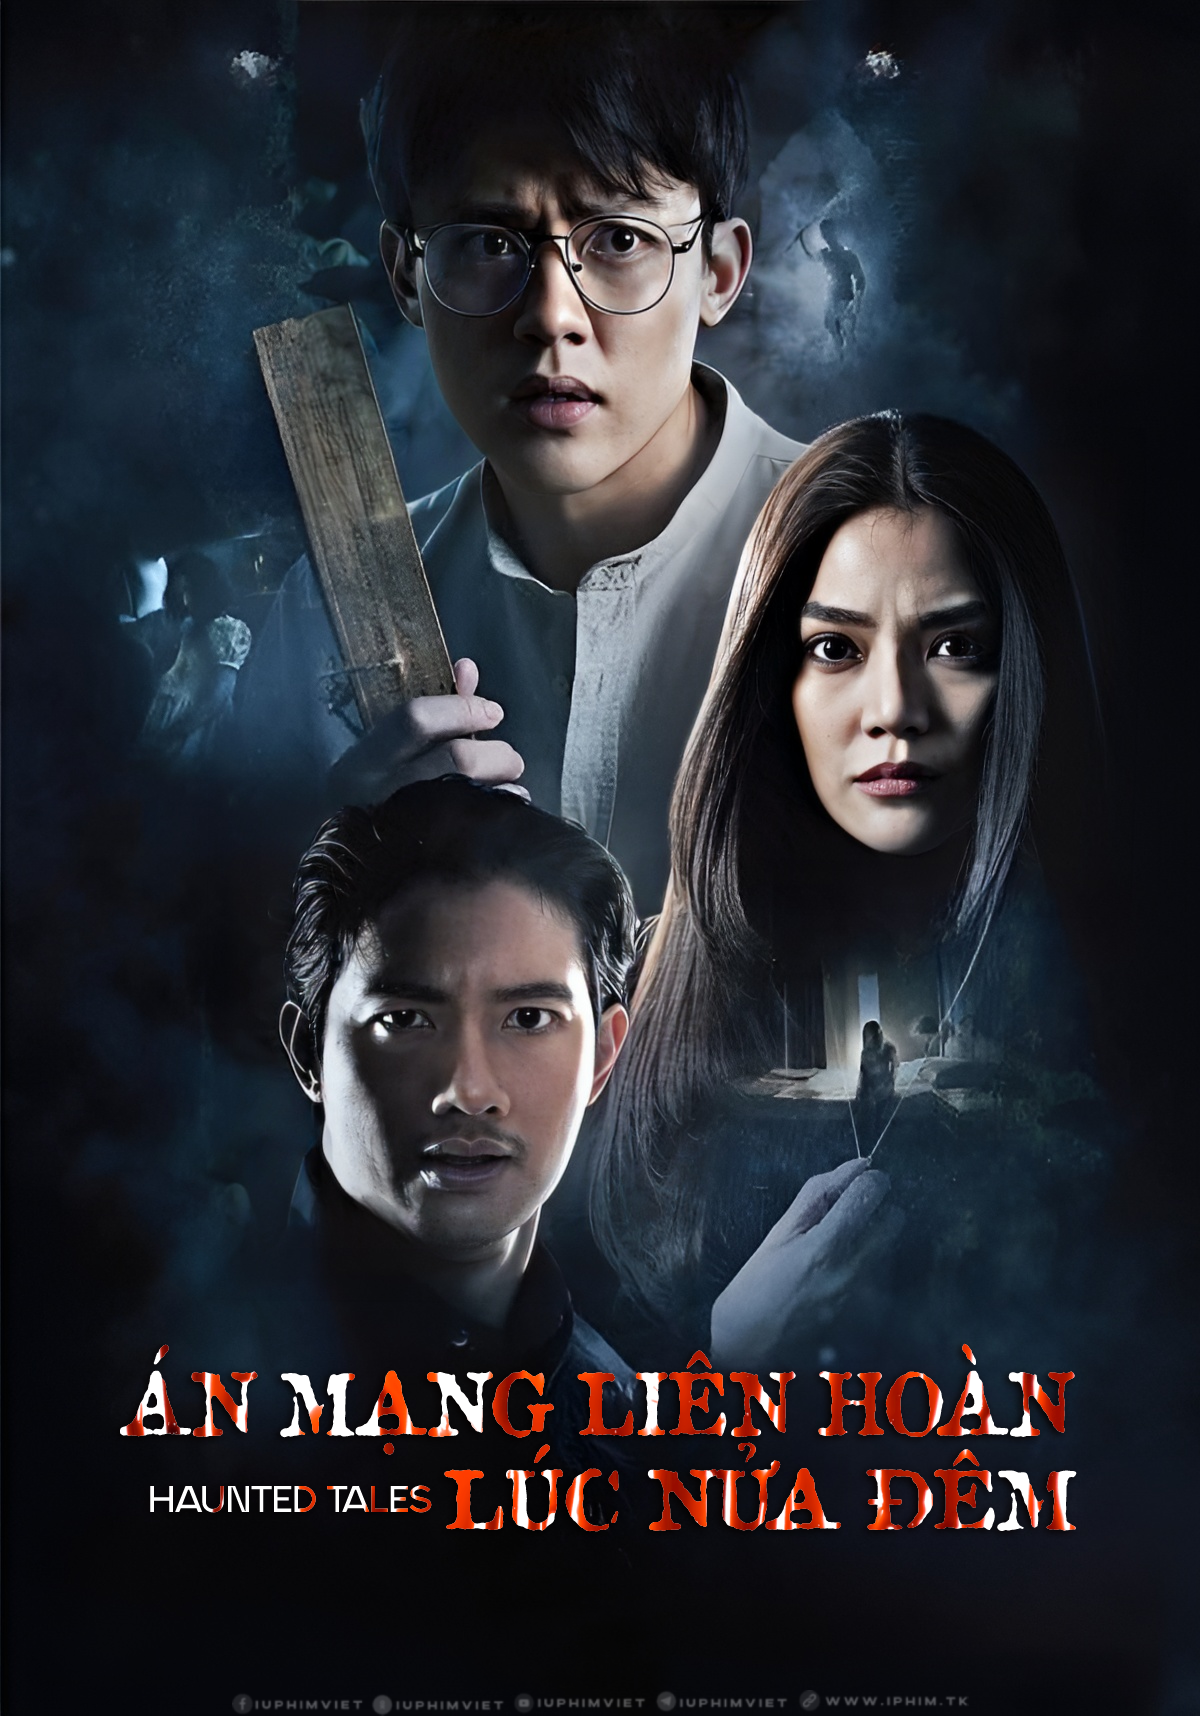 an-mang-lien-hoan-luc-nua-dem-haunted-tales-2022-poster